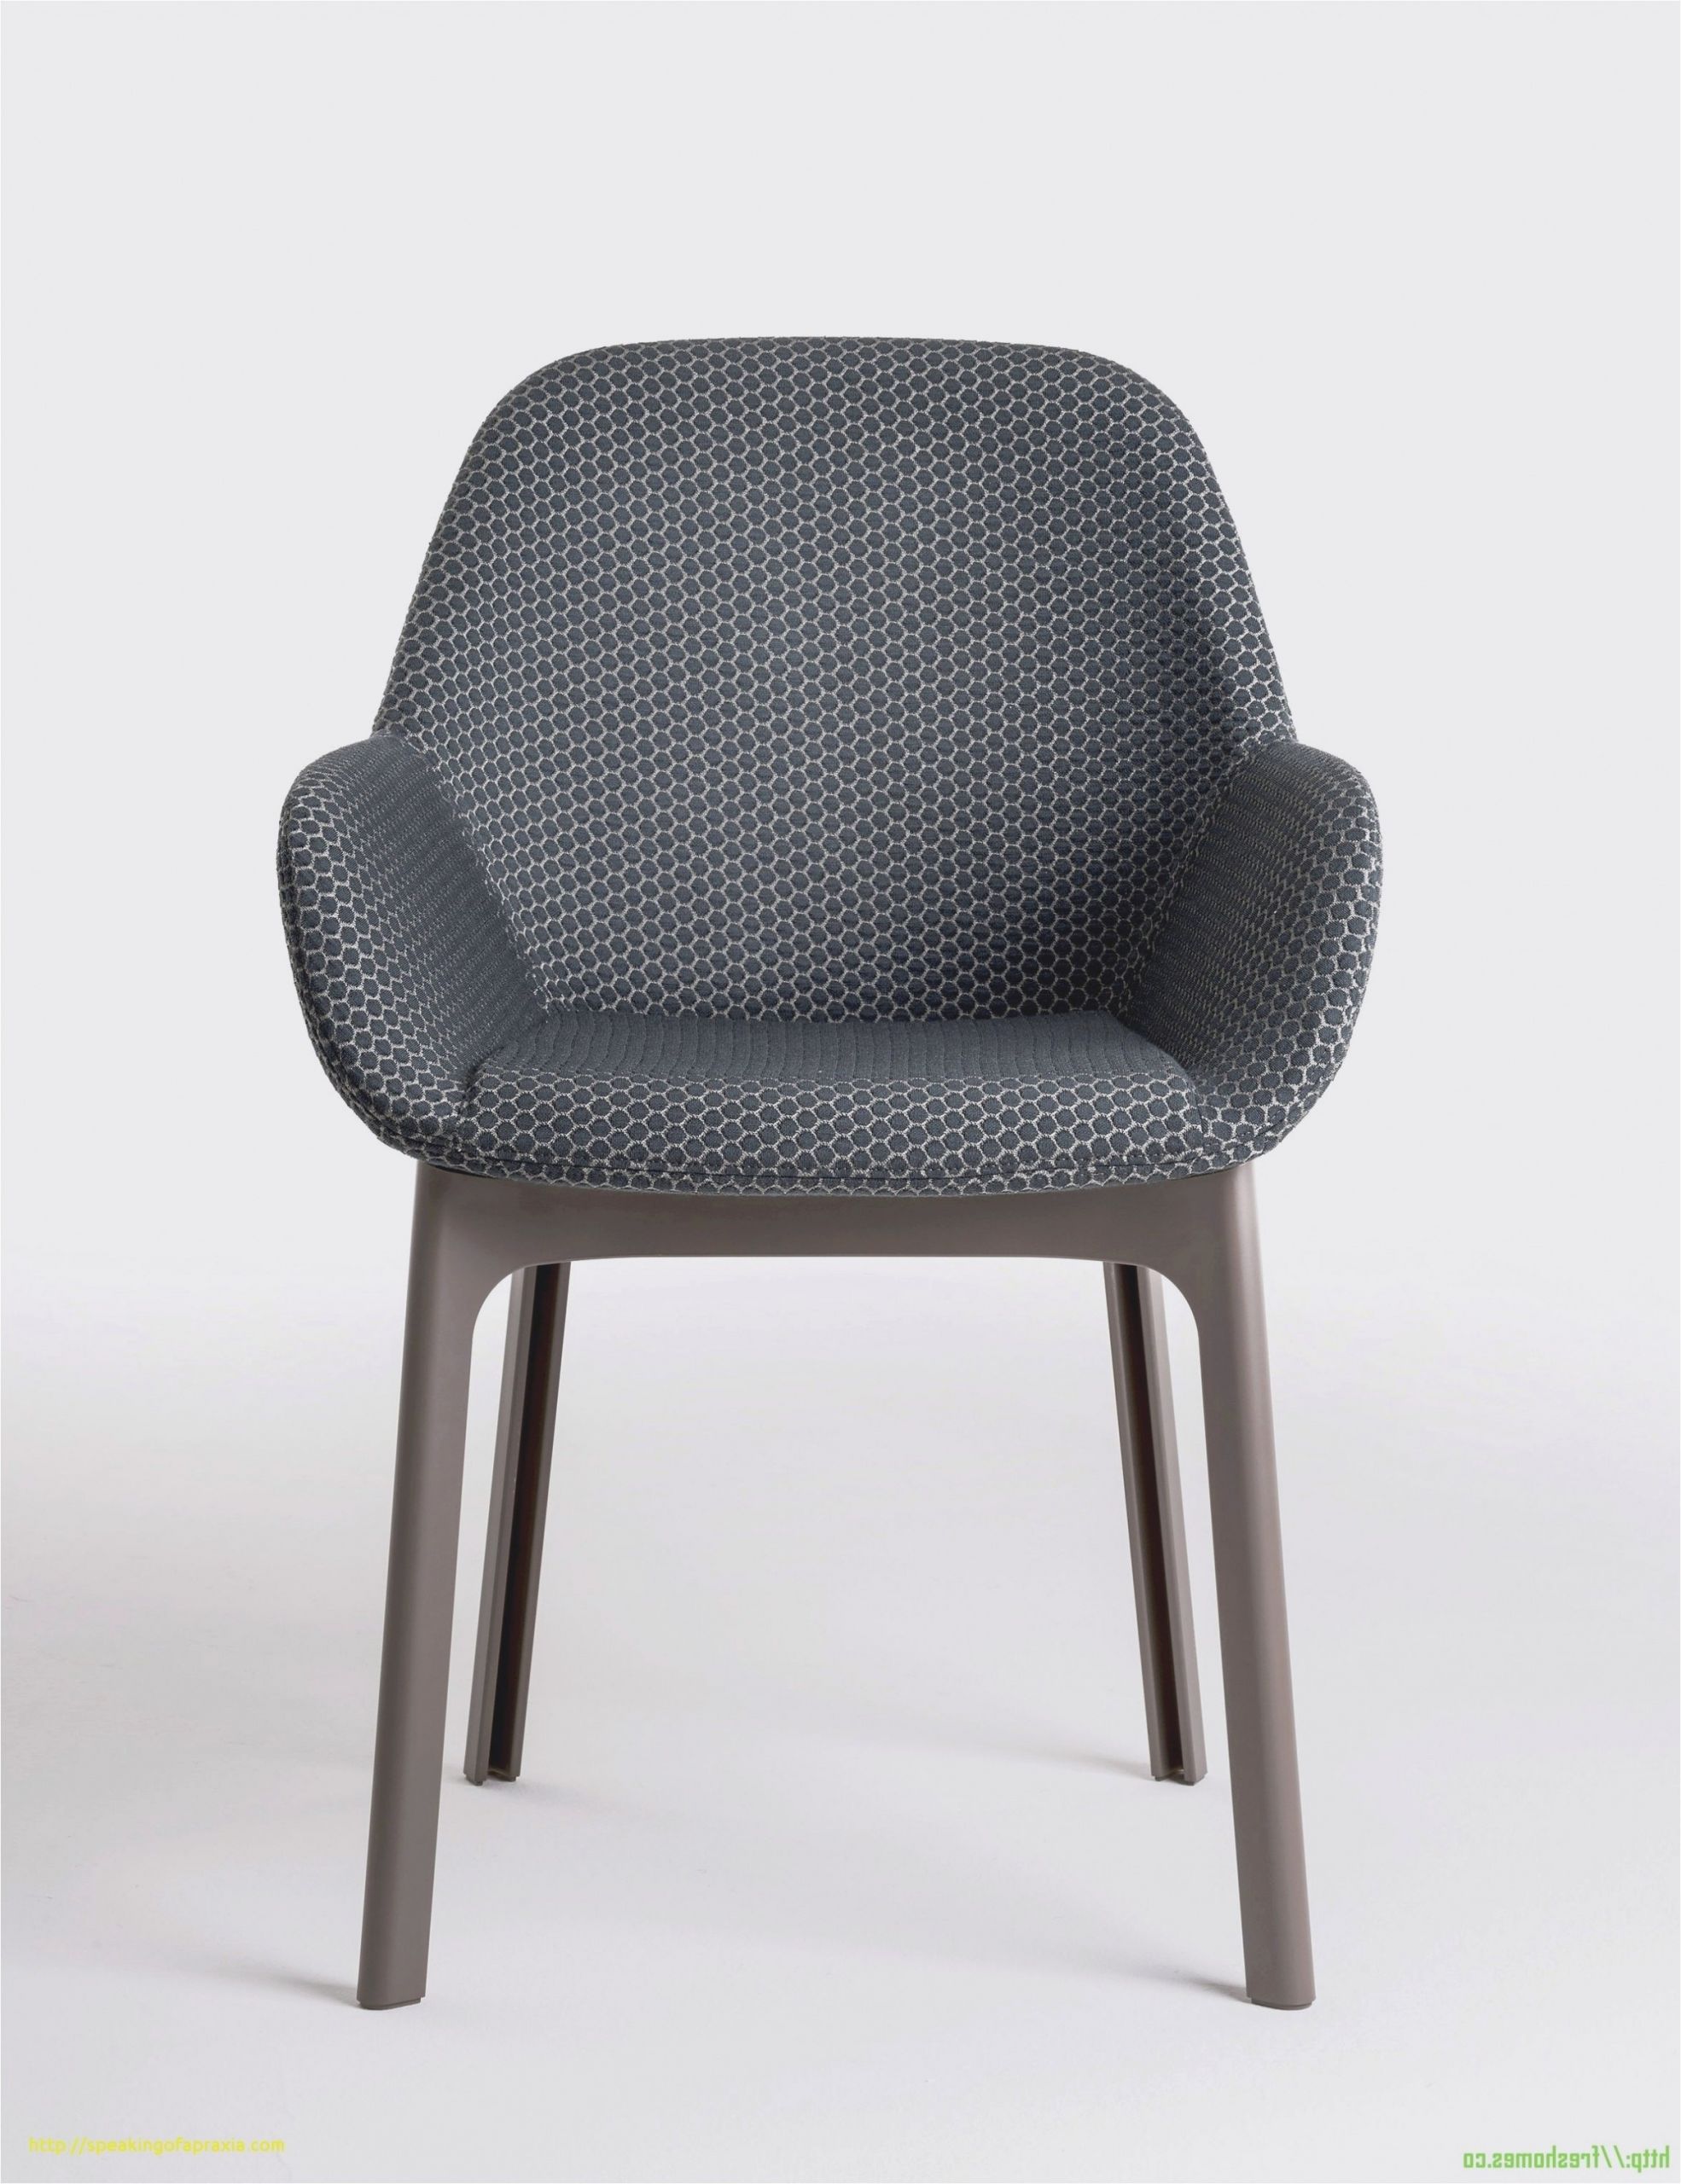 chaise scandinave avec accoudoir unique chaise fauteuil scandinave limite chaise scandinave alinea chaise of chaise scandinave avec accoudoir